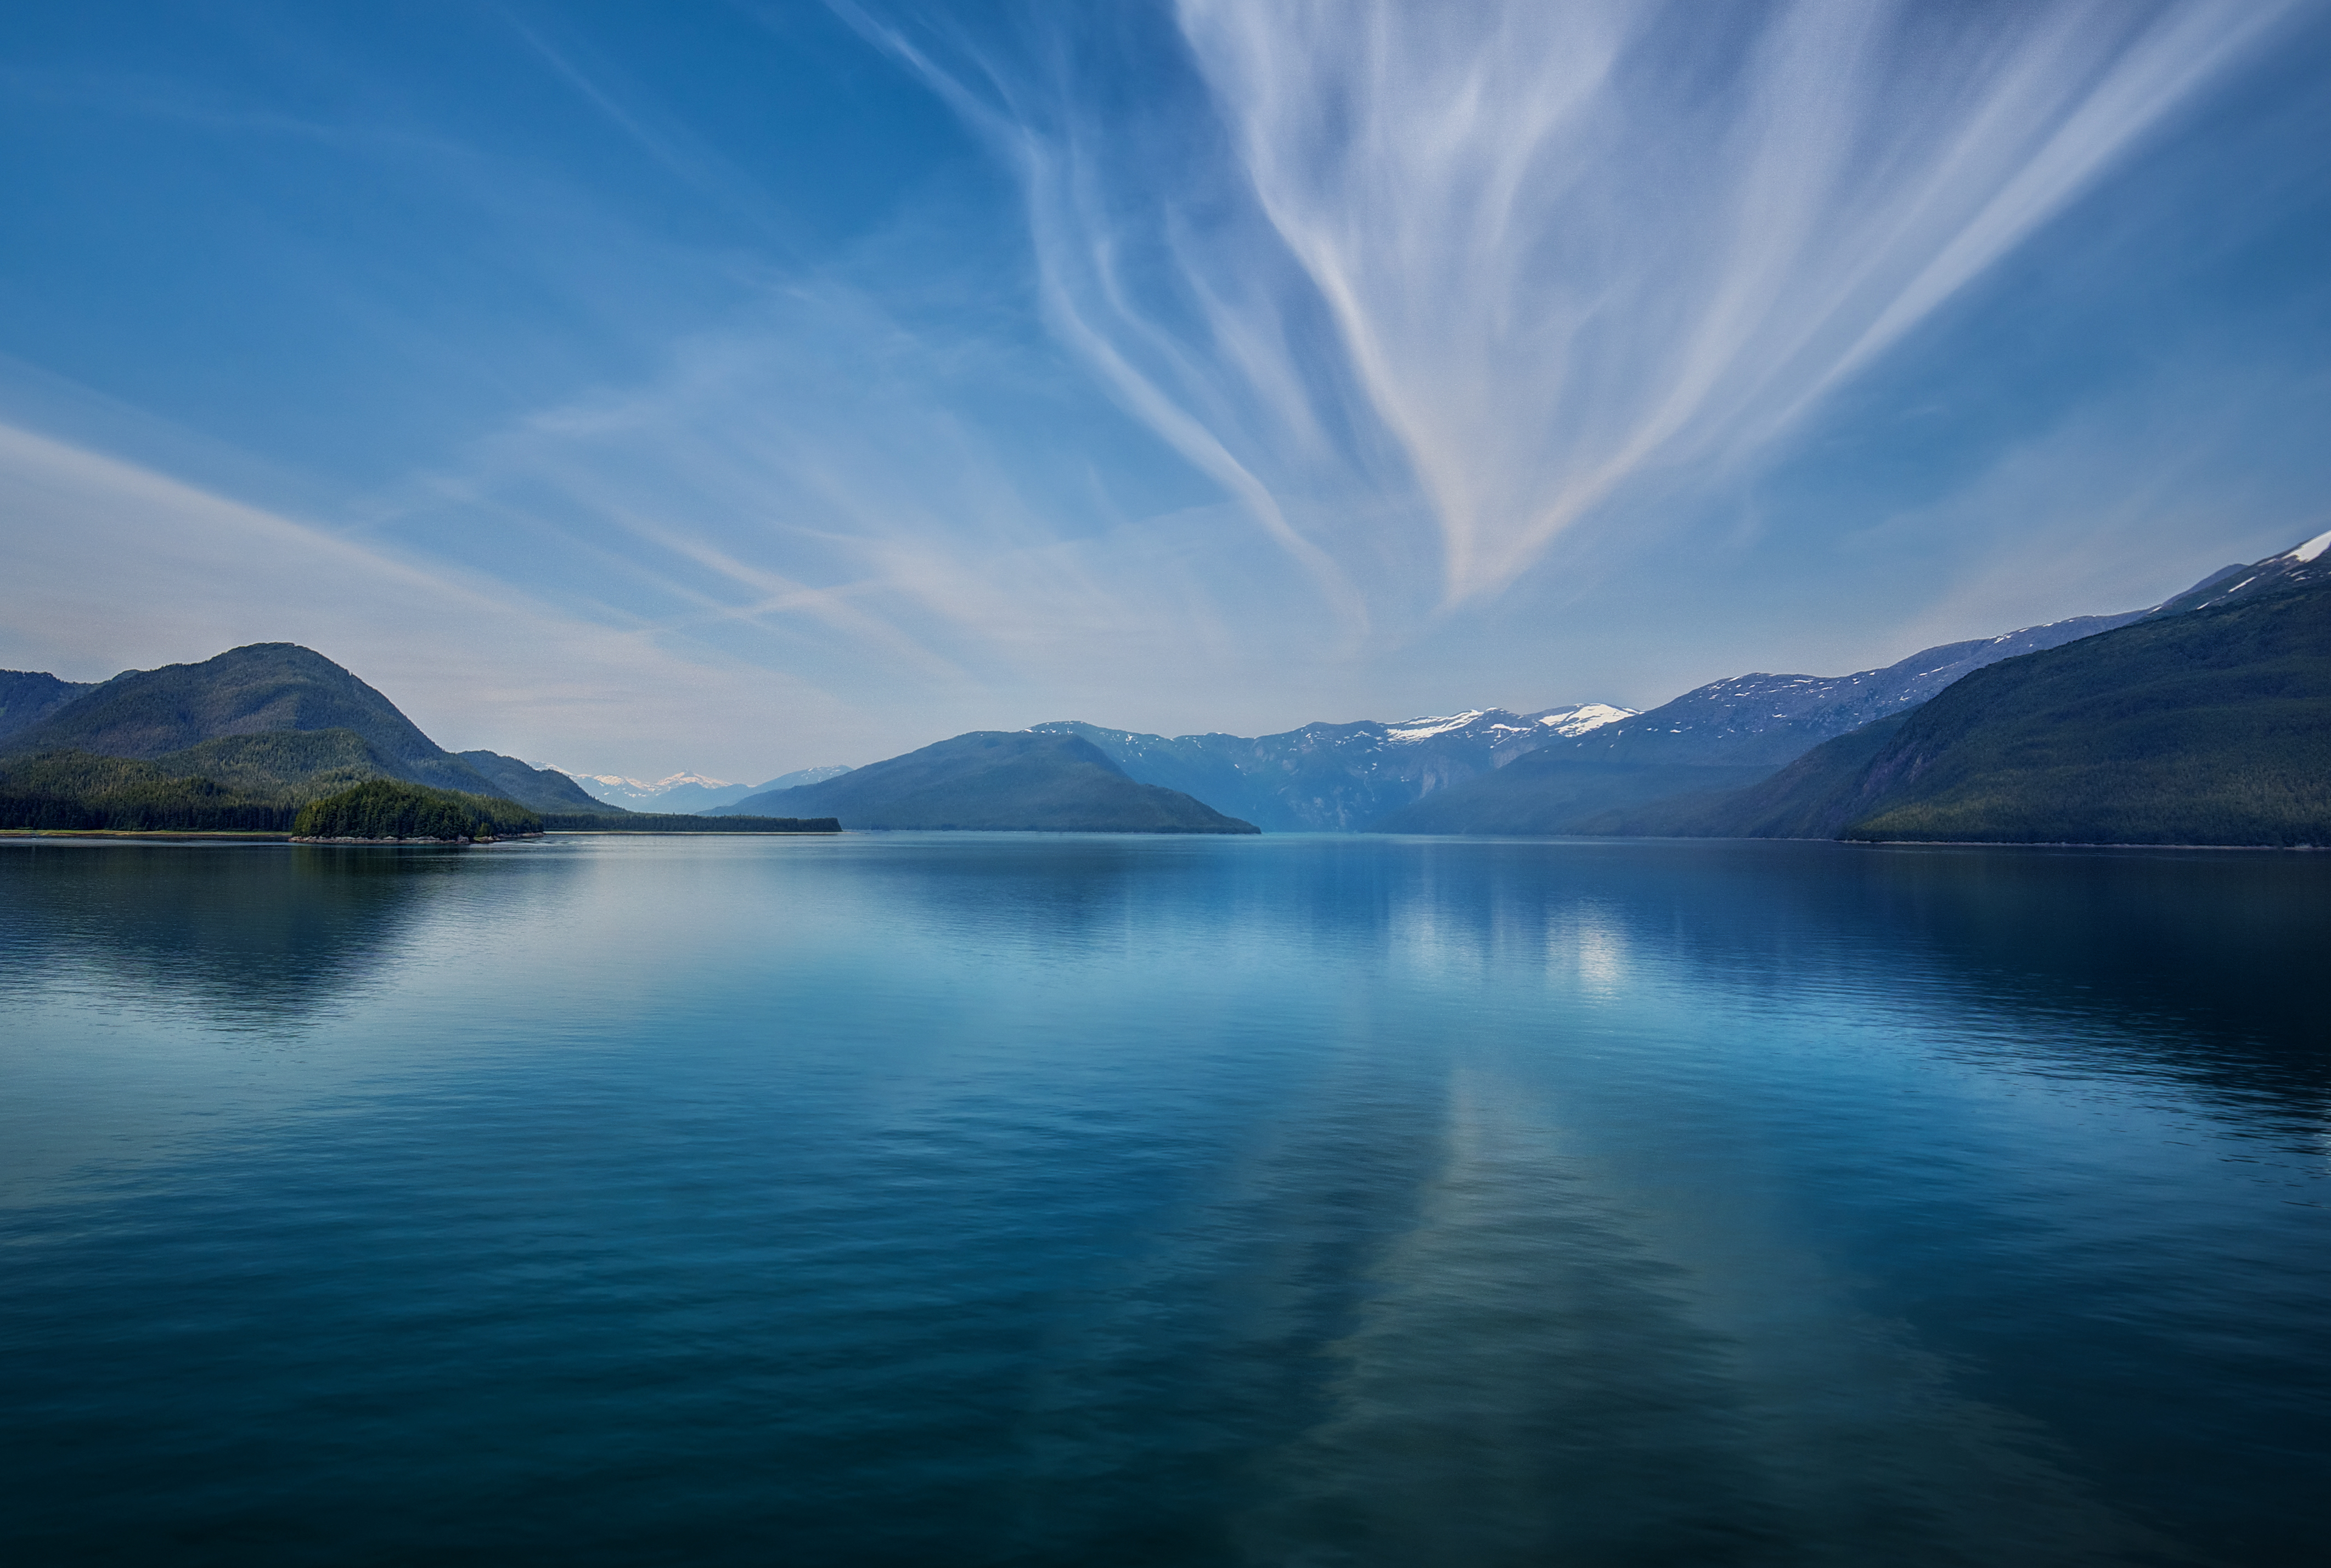 Обои 2560 1600. Озеро Текапо в новой Зеландии. Озеро в Норвегии Фьорд. Озеро Тургояк. Река Фьорд.